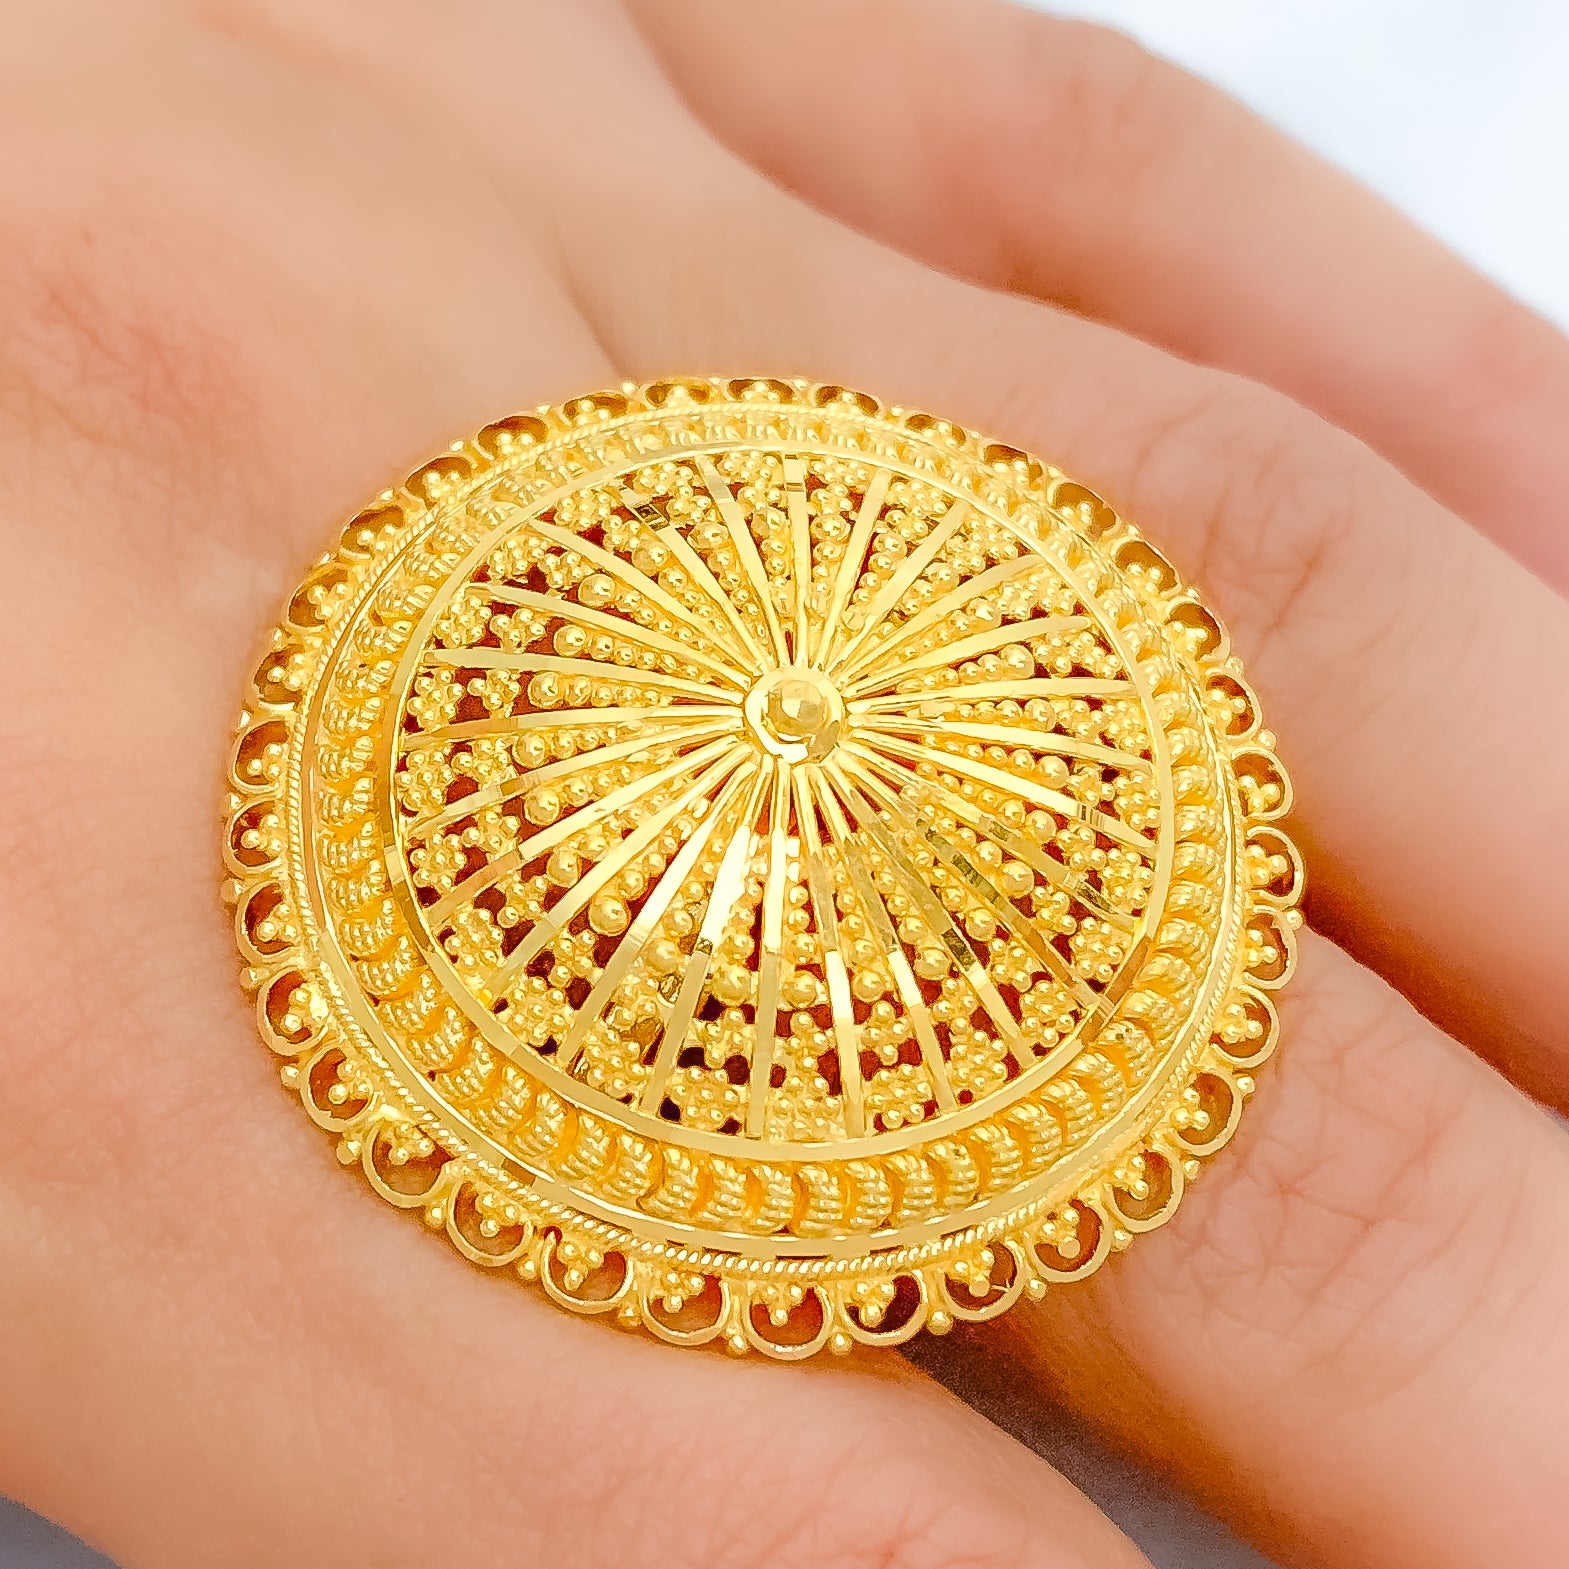 Branch (1) 21 karat gold ring, weight 6.47 grams - مصاغات الأربش للذهب  بالسعودية قسم المتجر الإلكتروني